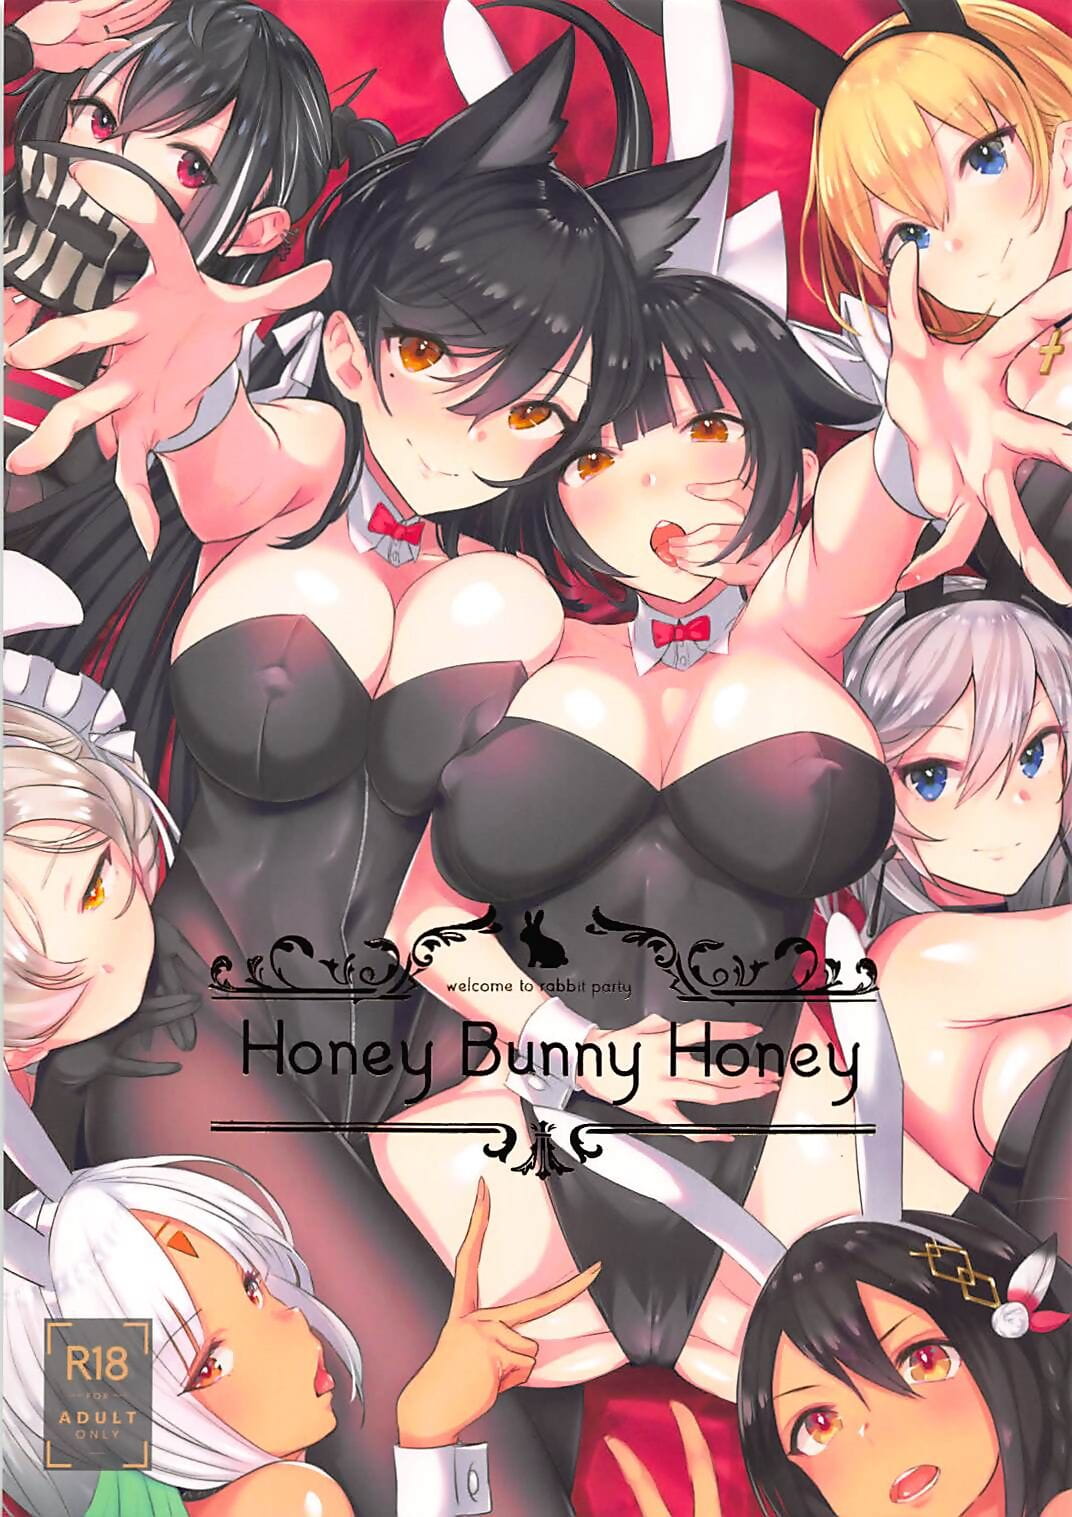 honing Bunny honing page 1